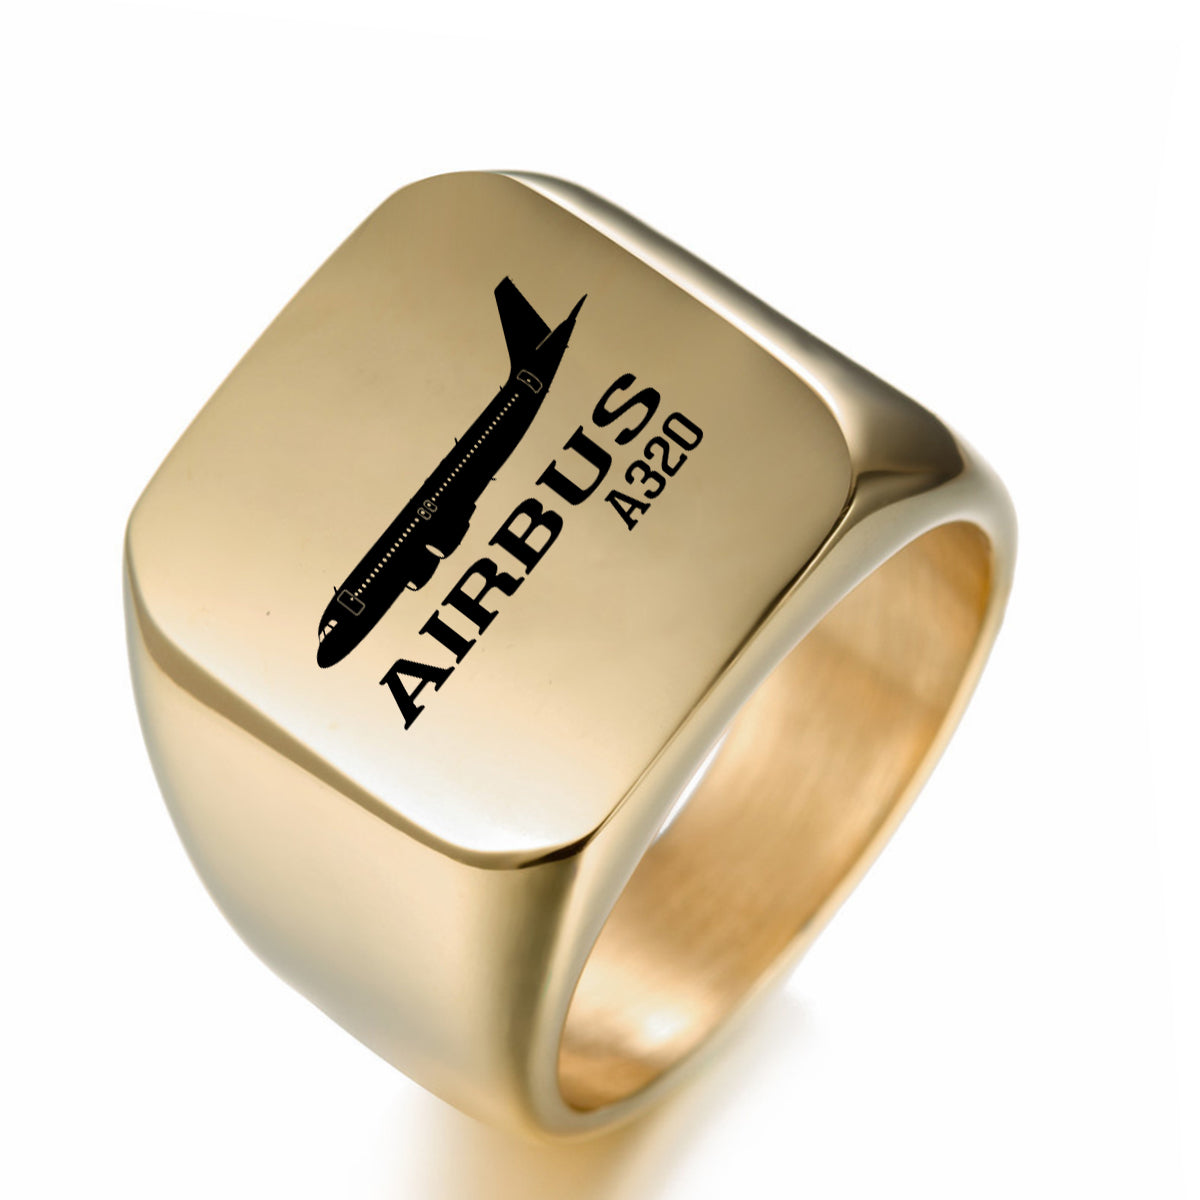 Airbus A320 Printed Designed Men Rings